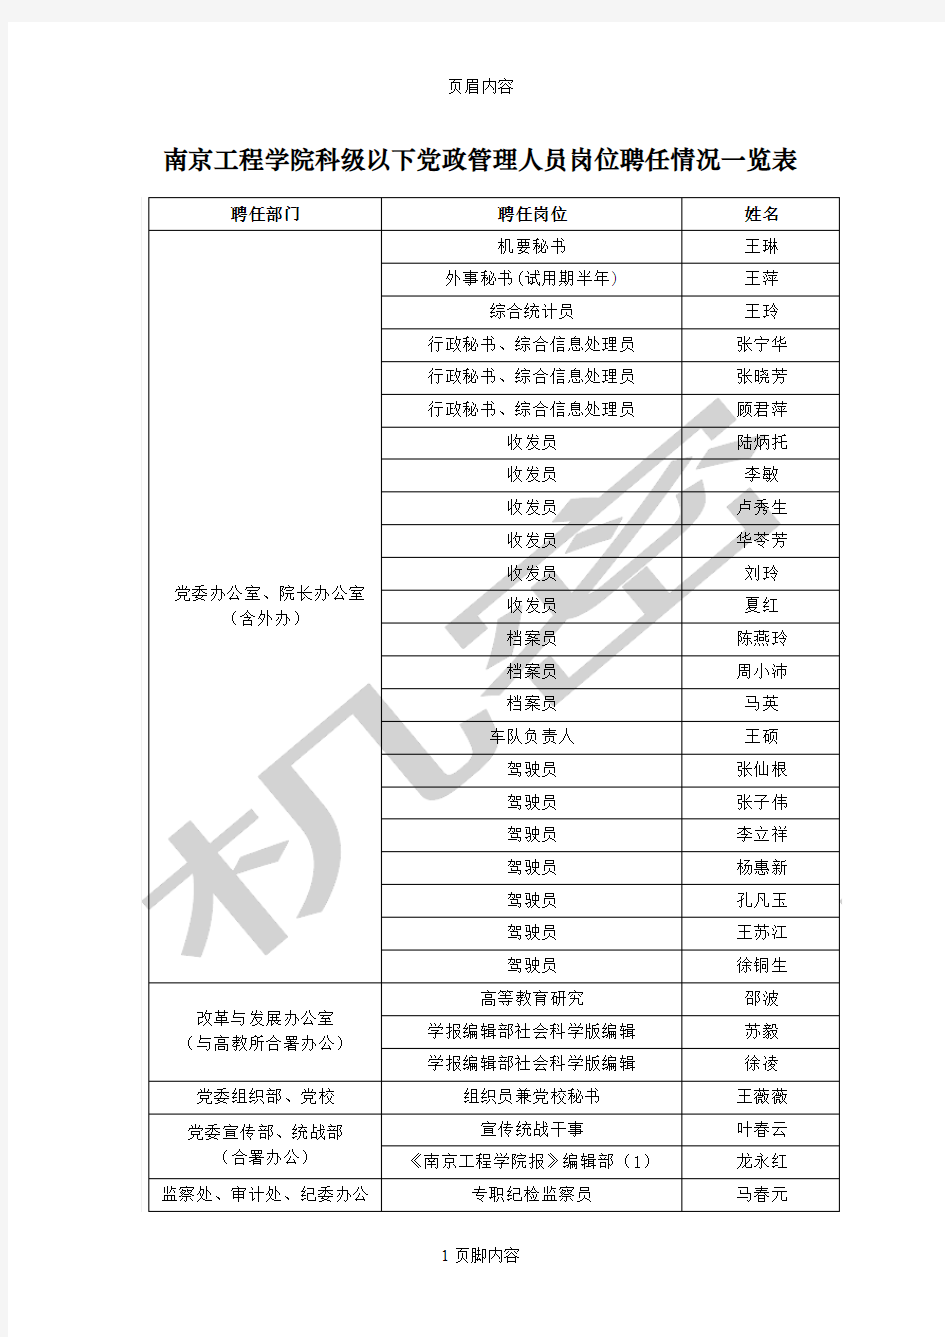 南京工程学院科级以下党政管理人员岗位聘任情况一览表供参考学习